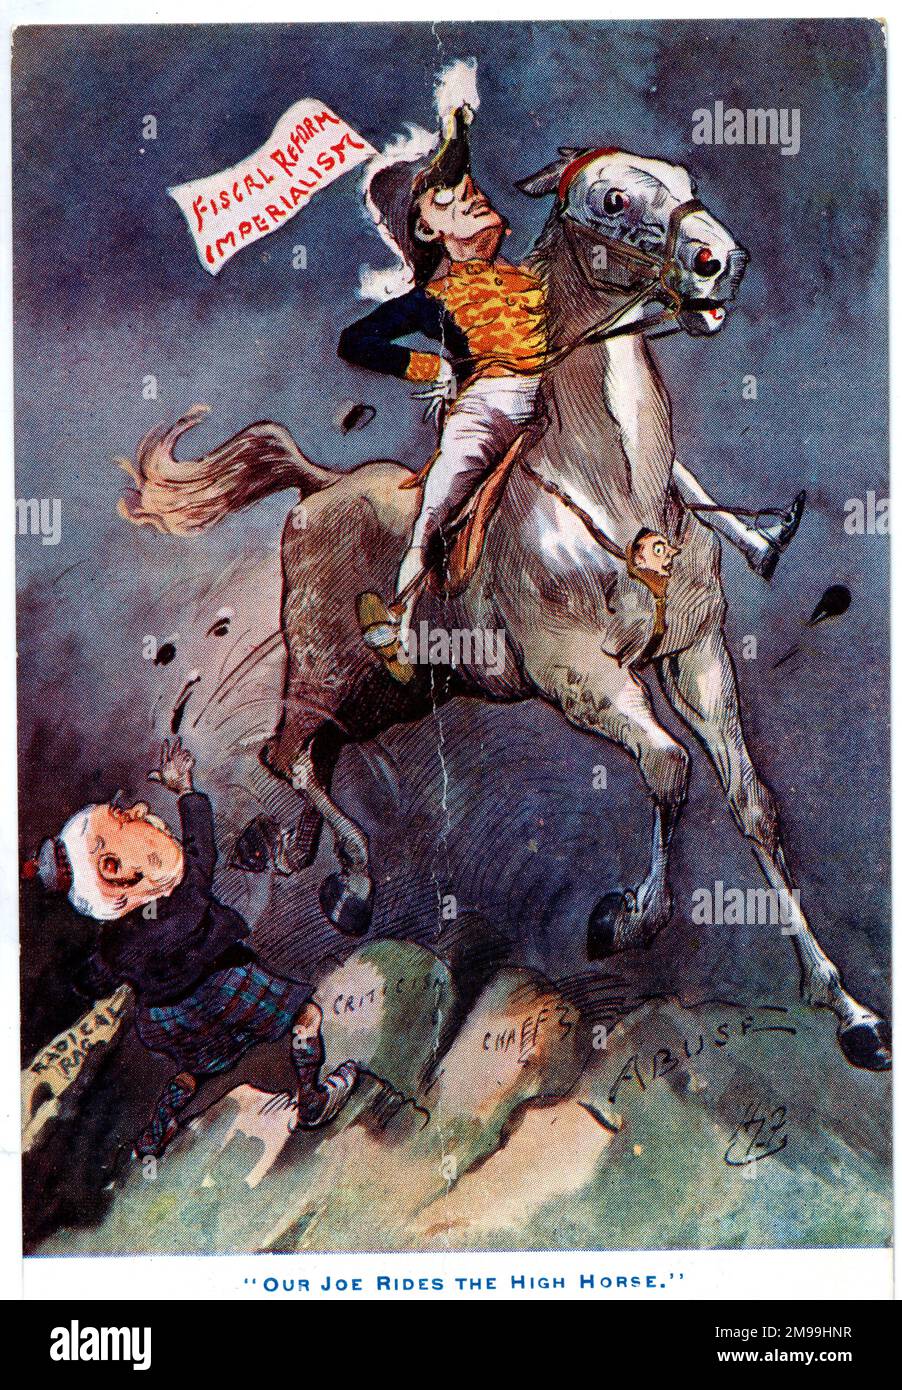 Caricature, notre Joe passe le High Horse, montrant Joseph Chamberlain battant le drapeau de l'impérialisme et de la réforme fiscale, piétinant son adversaire politique Campbell-Bannerman. Banque D'Images